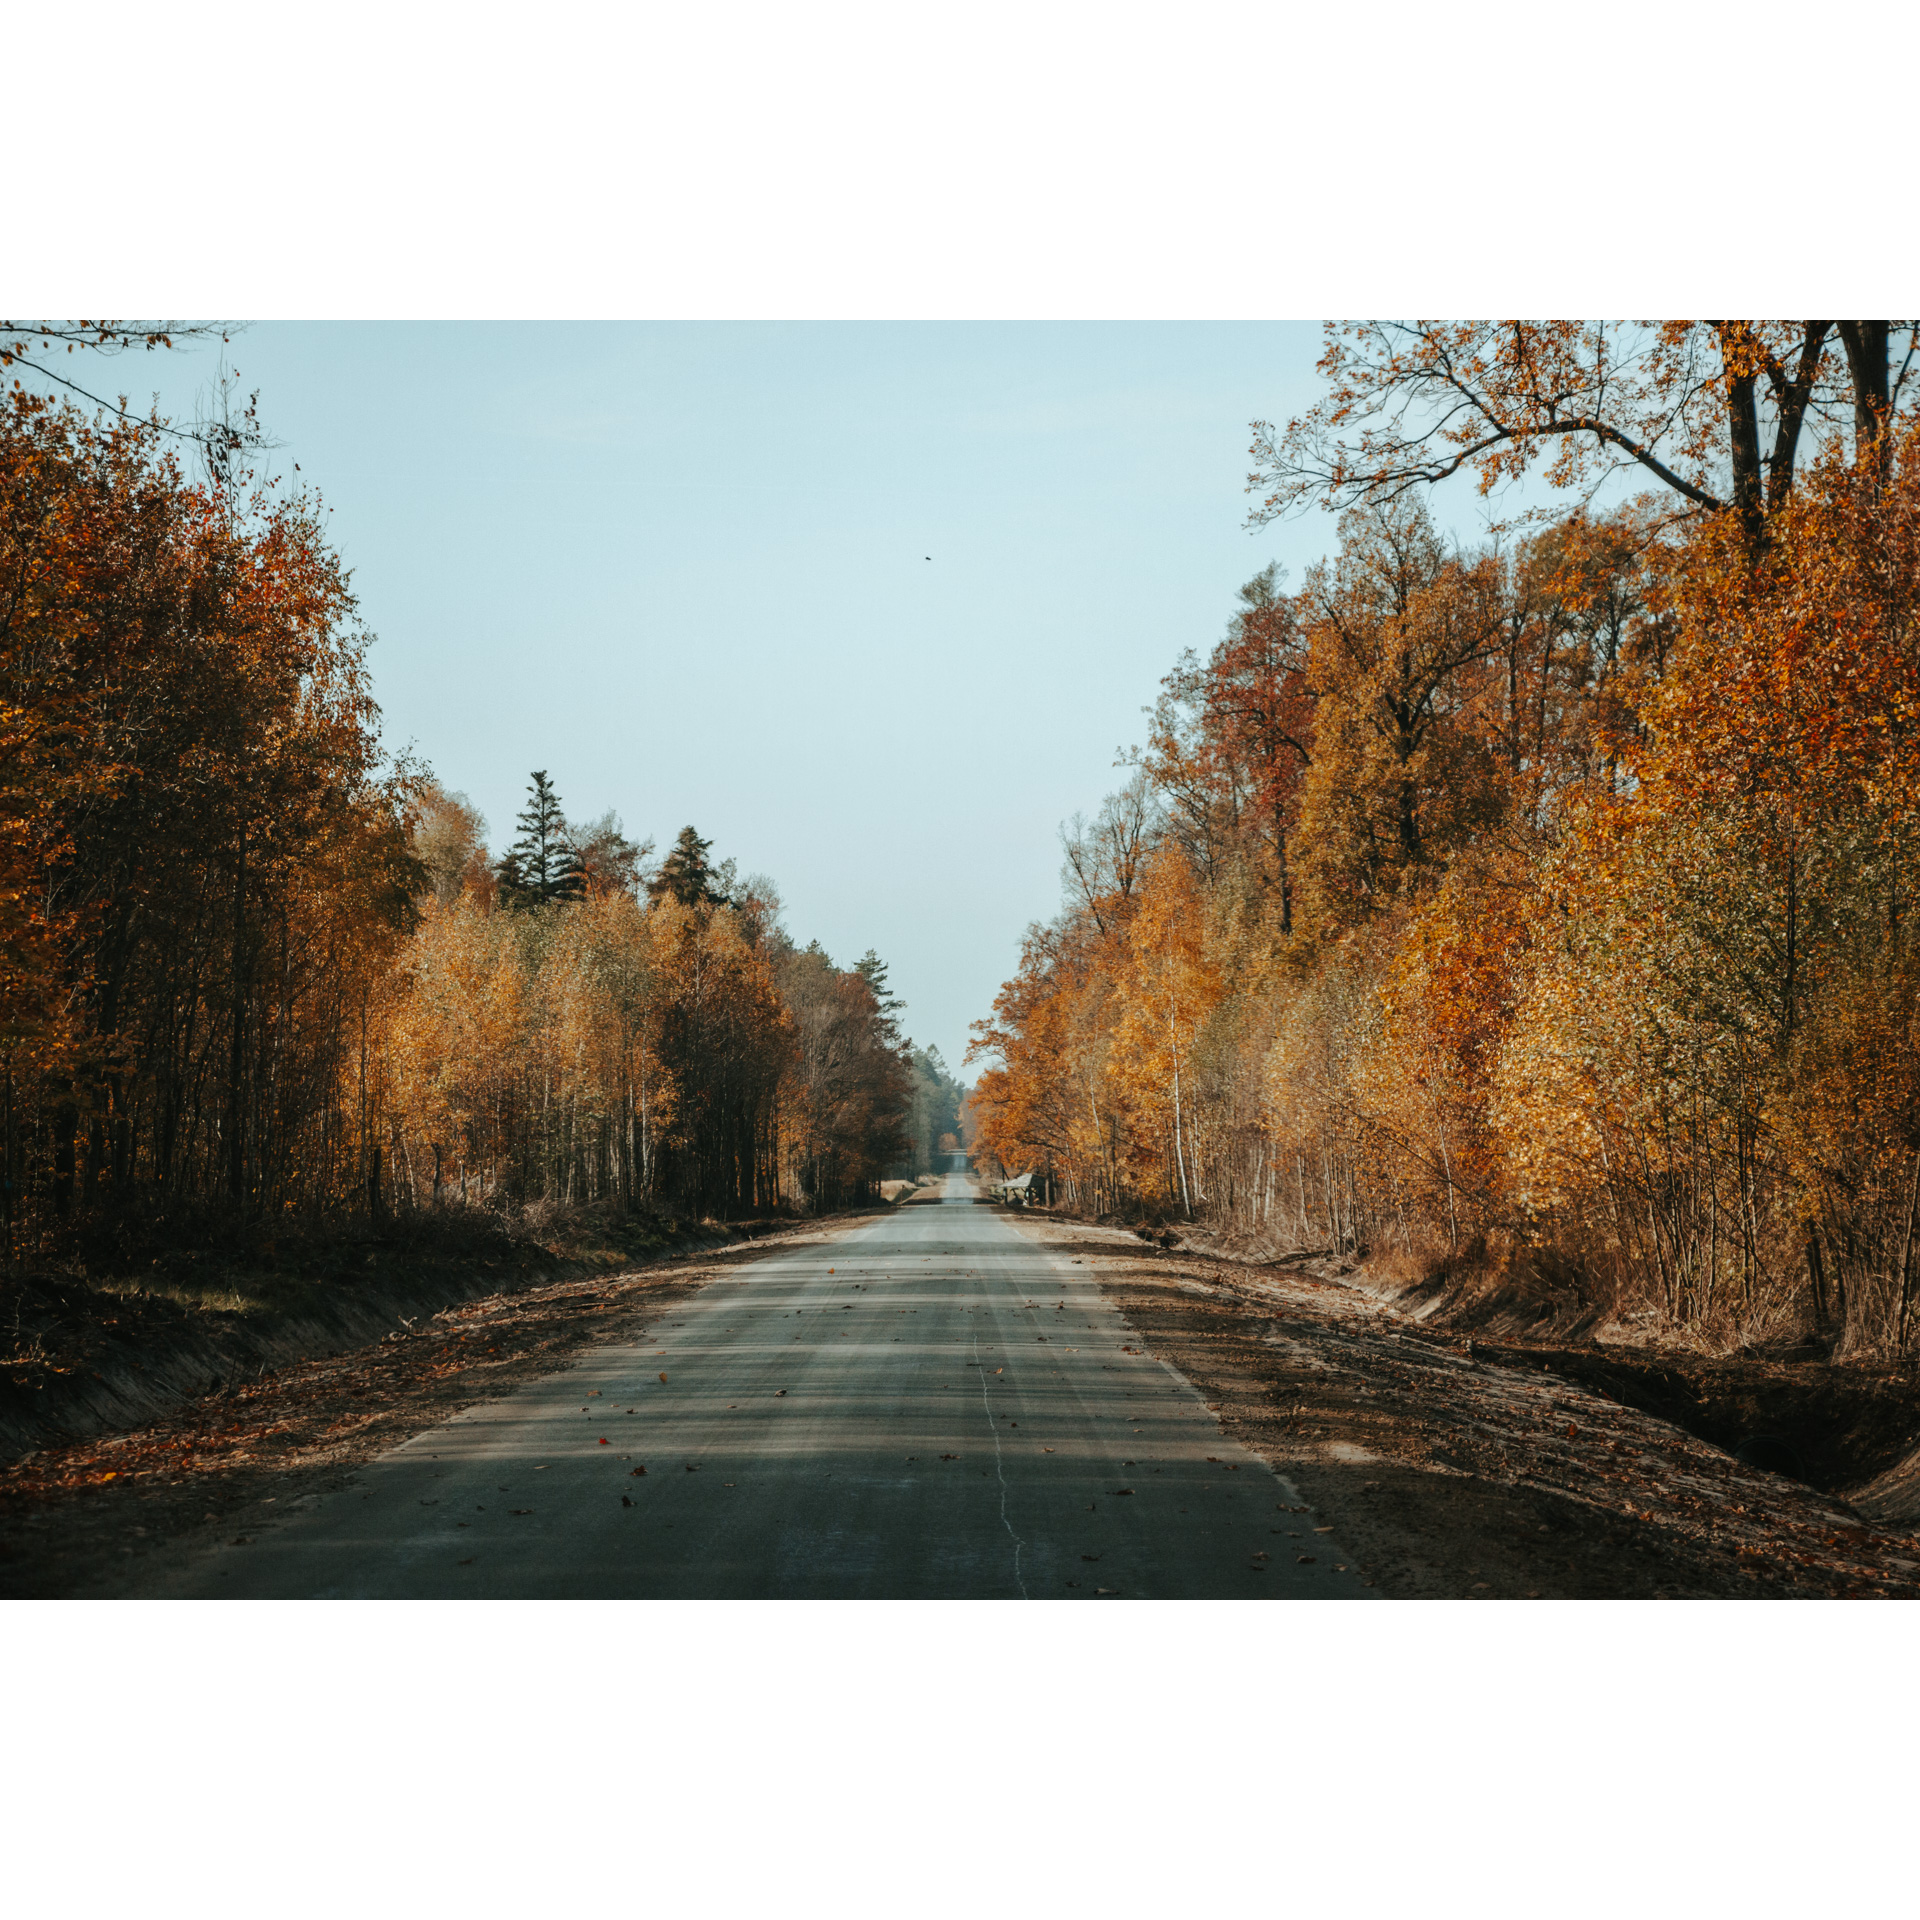 A straight, asphalt road running between trees in brown, beige and orange colors